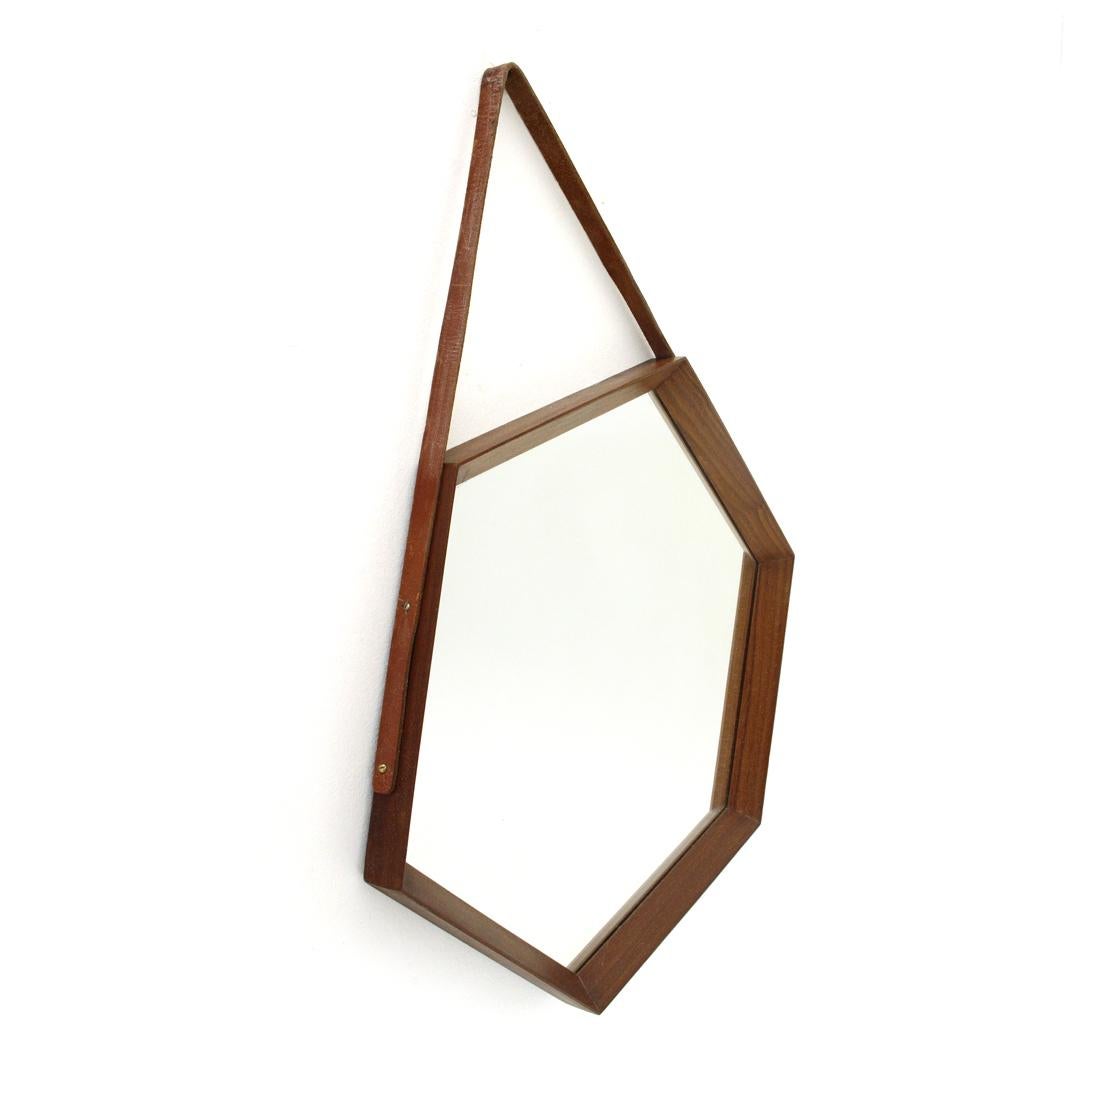 Mid-20th Century Italian Hexagonal Teak Frame Mirror, 1960s